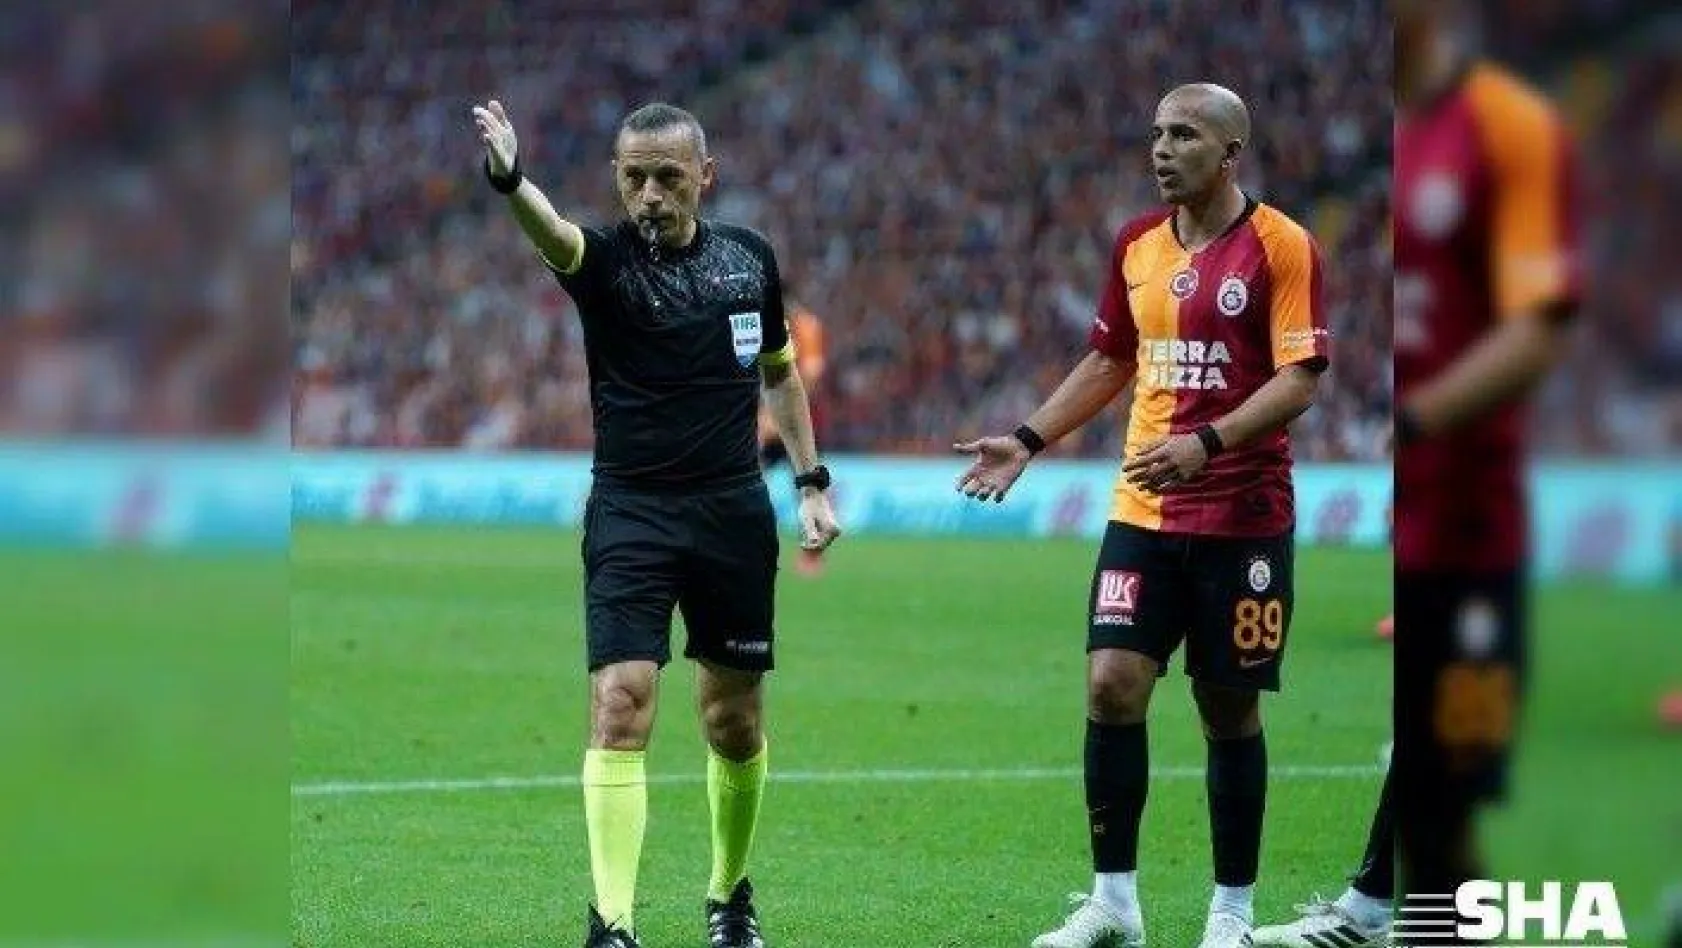 Süper Lig: Galatasaray: 0 - Trabzonspor: 1 (İlk yarı)